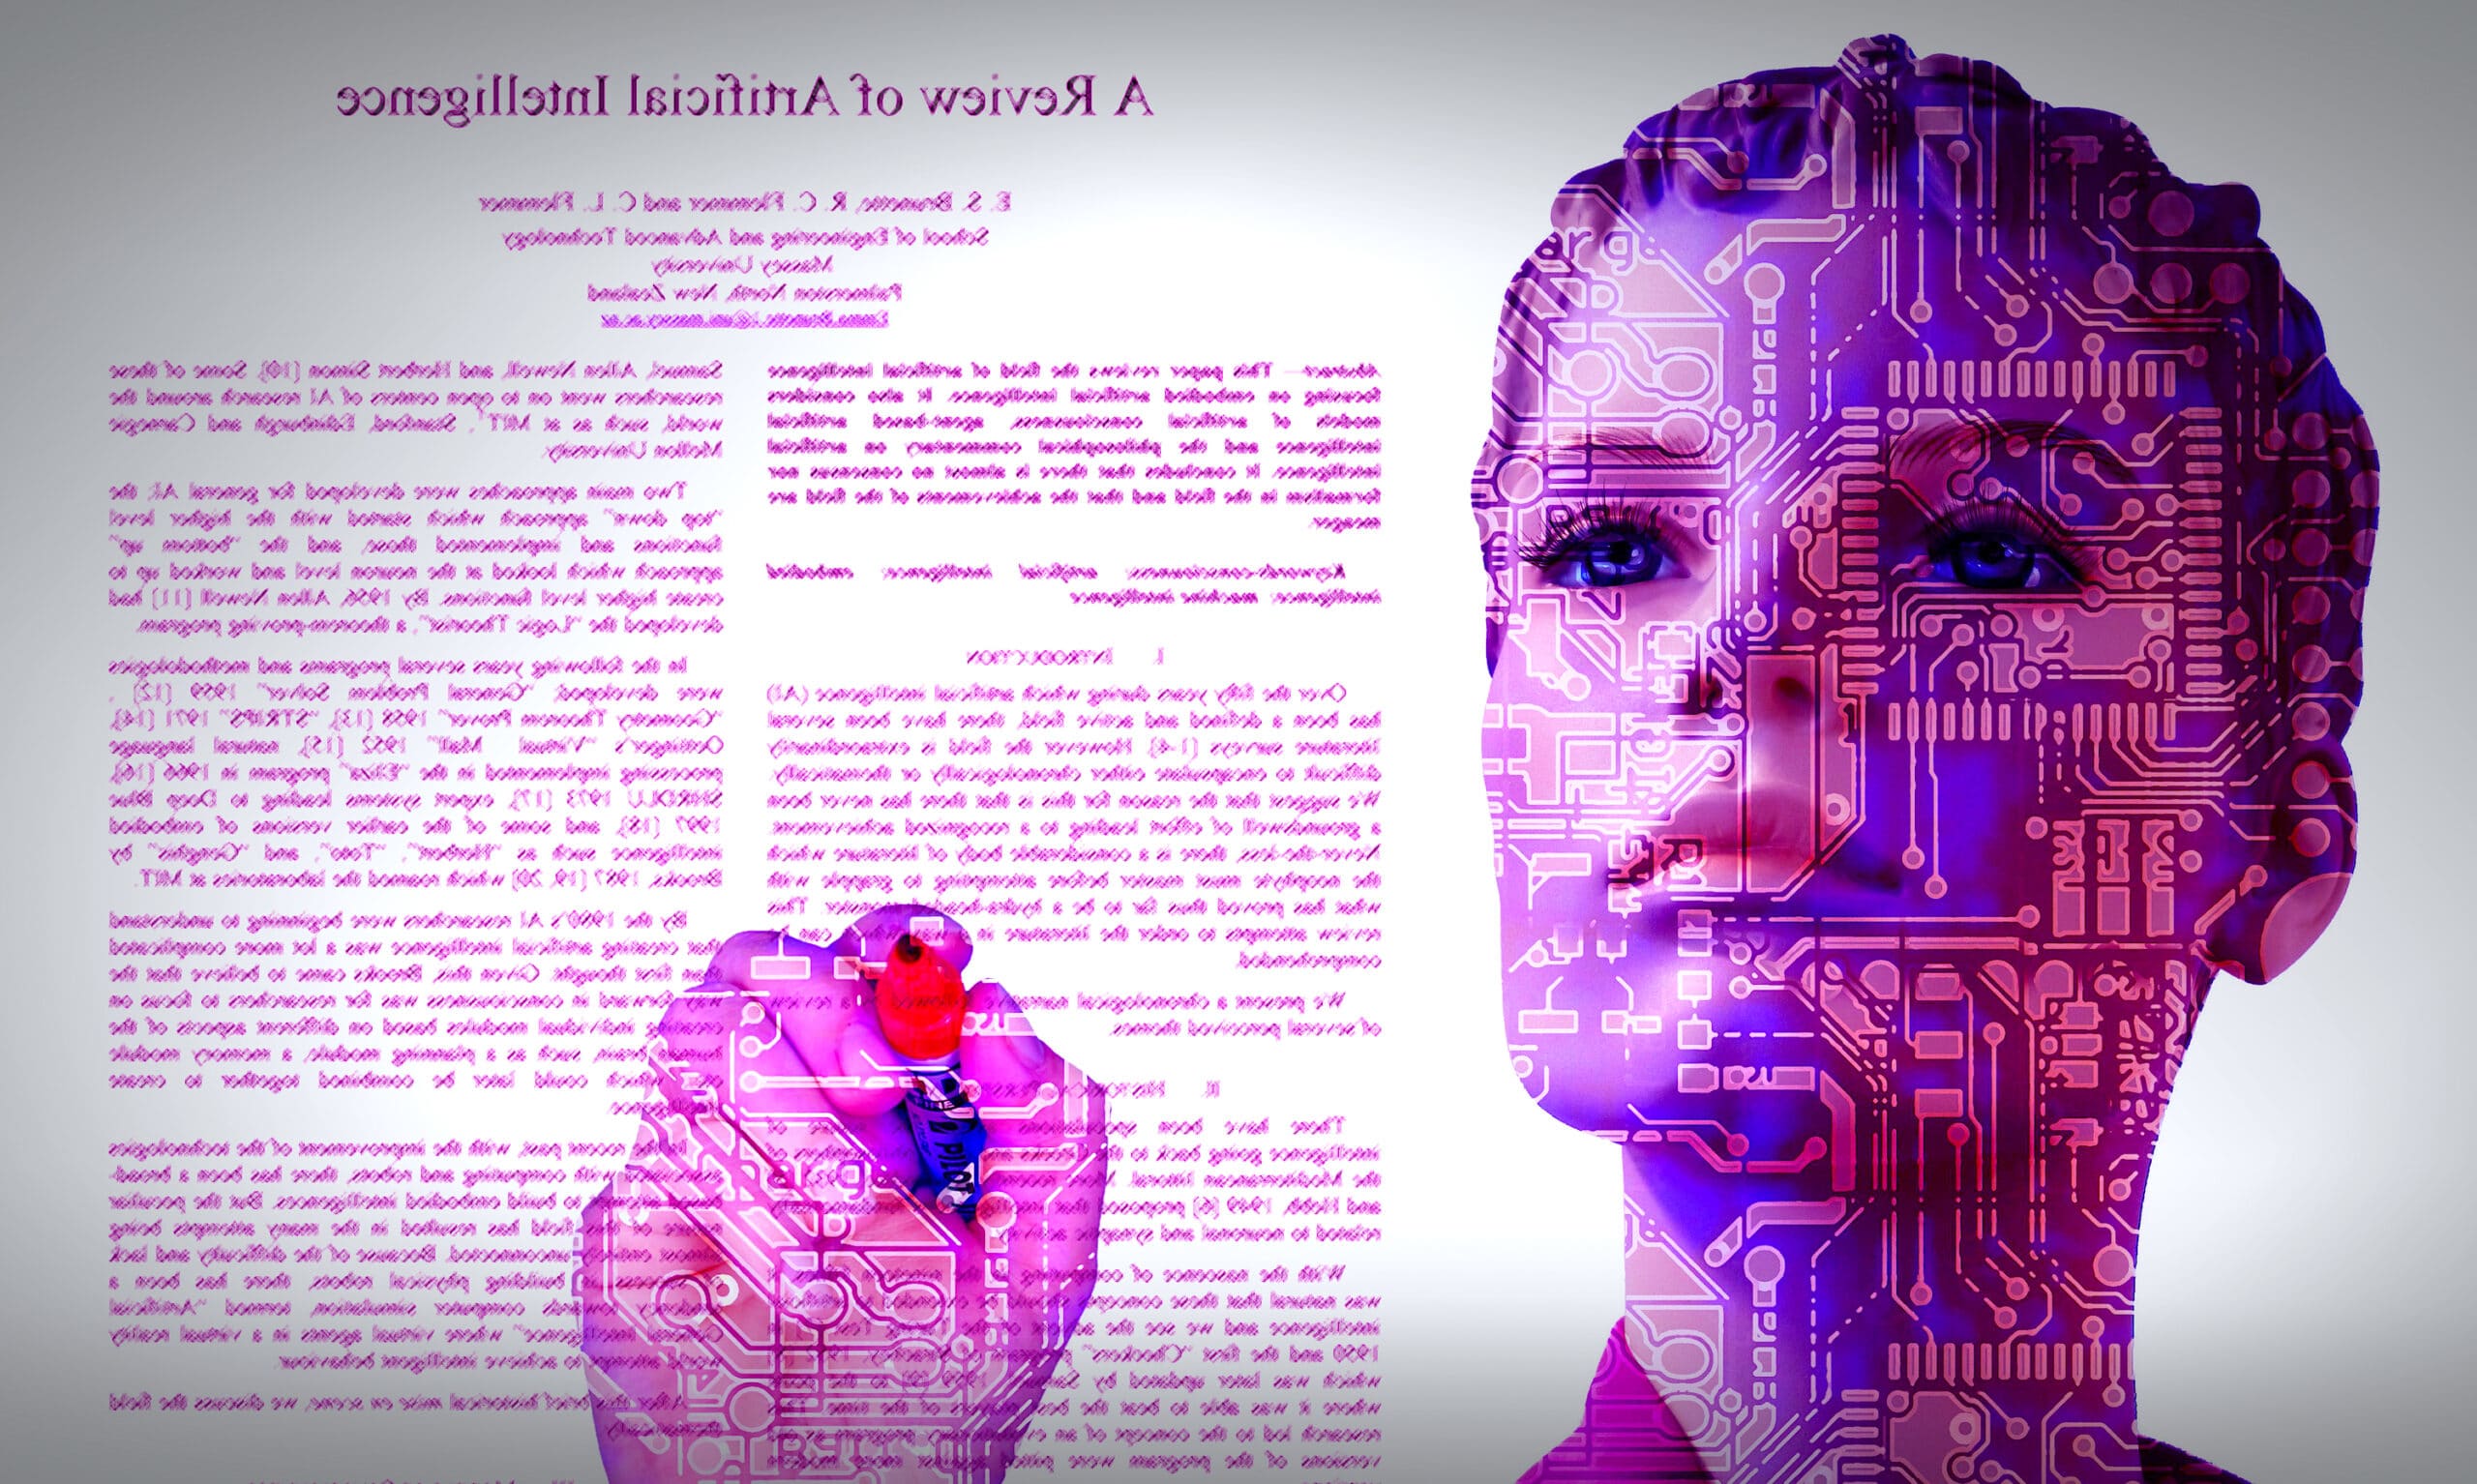 L'intelligence artificielle GPT-3 a rédigé une publication scientifique à propos d'elle-même